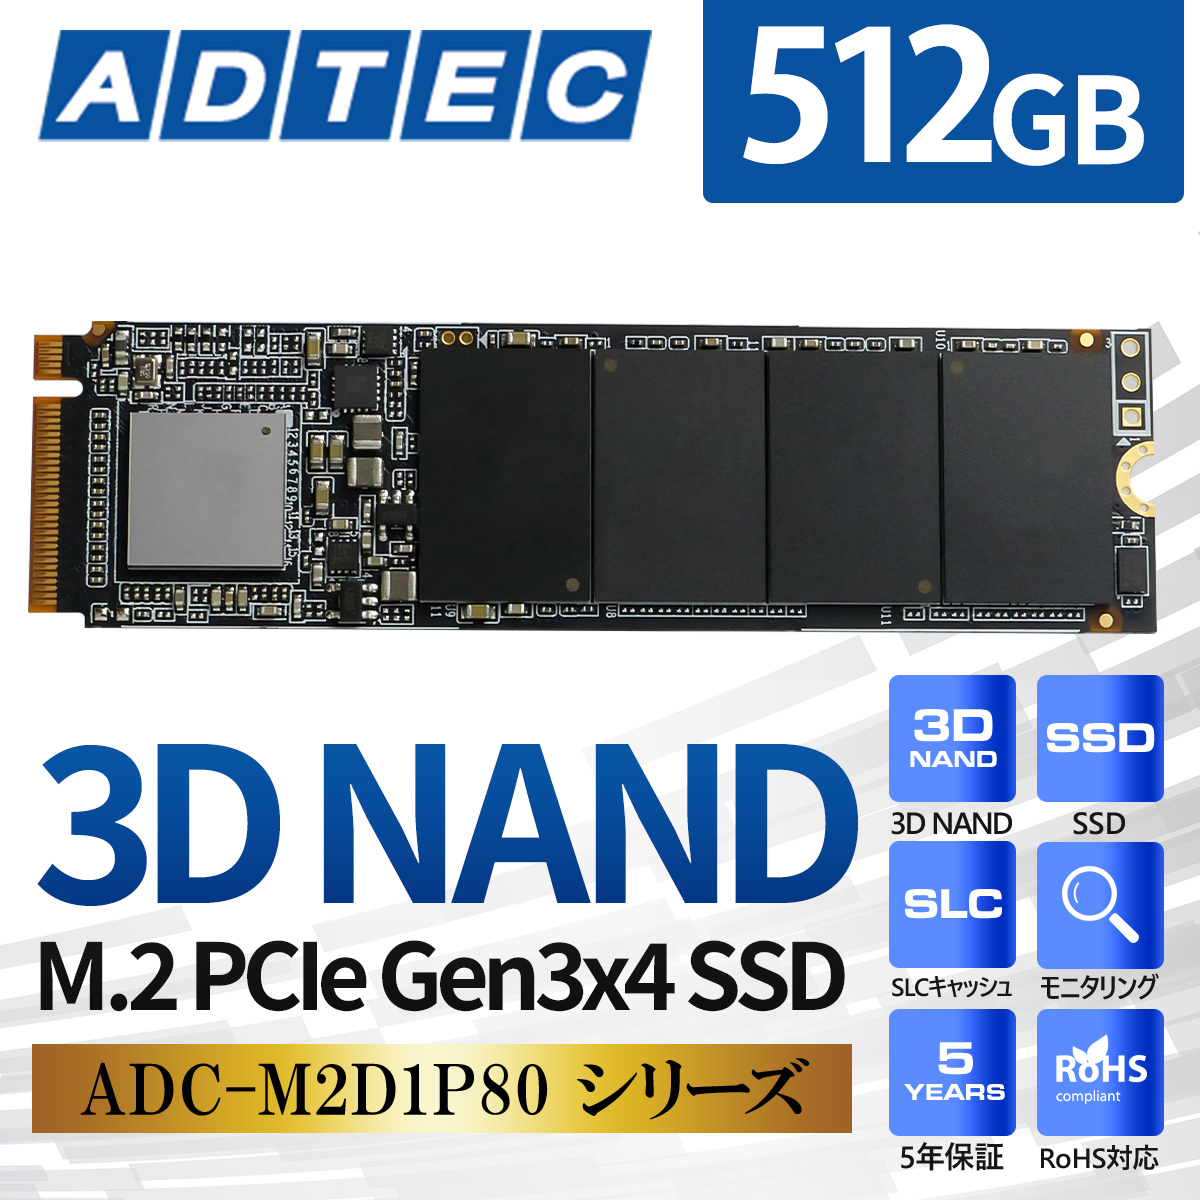 注目商品 【アドテック ADTEC】アドテック AD-EXDPGC-1TB 外付けSSD 1TB 3D TLC PCIe USB type 内蔵ドライブ・ストレージ  hitachi-sweets.jp